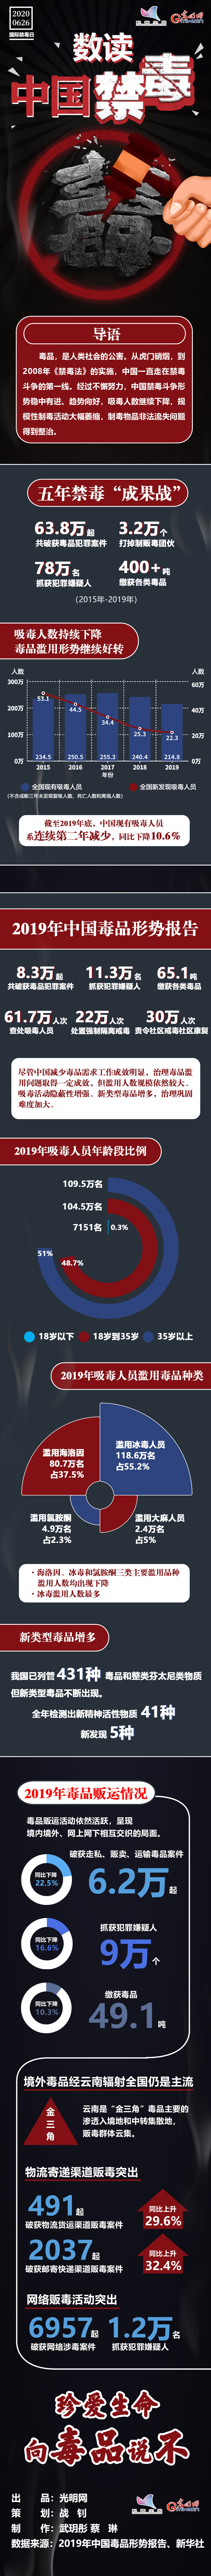 【数据图解】数读《2019年中国毒品形势报告》